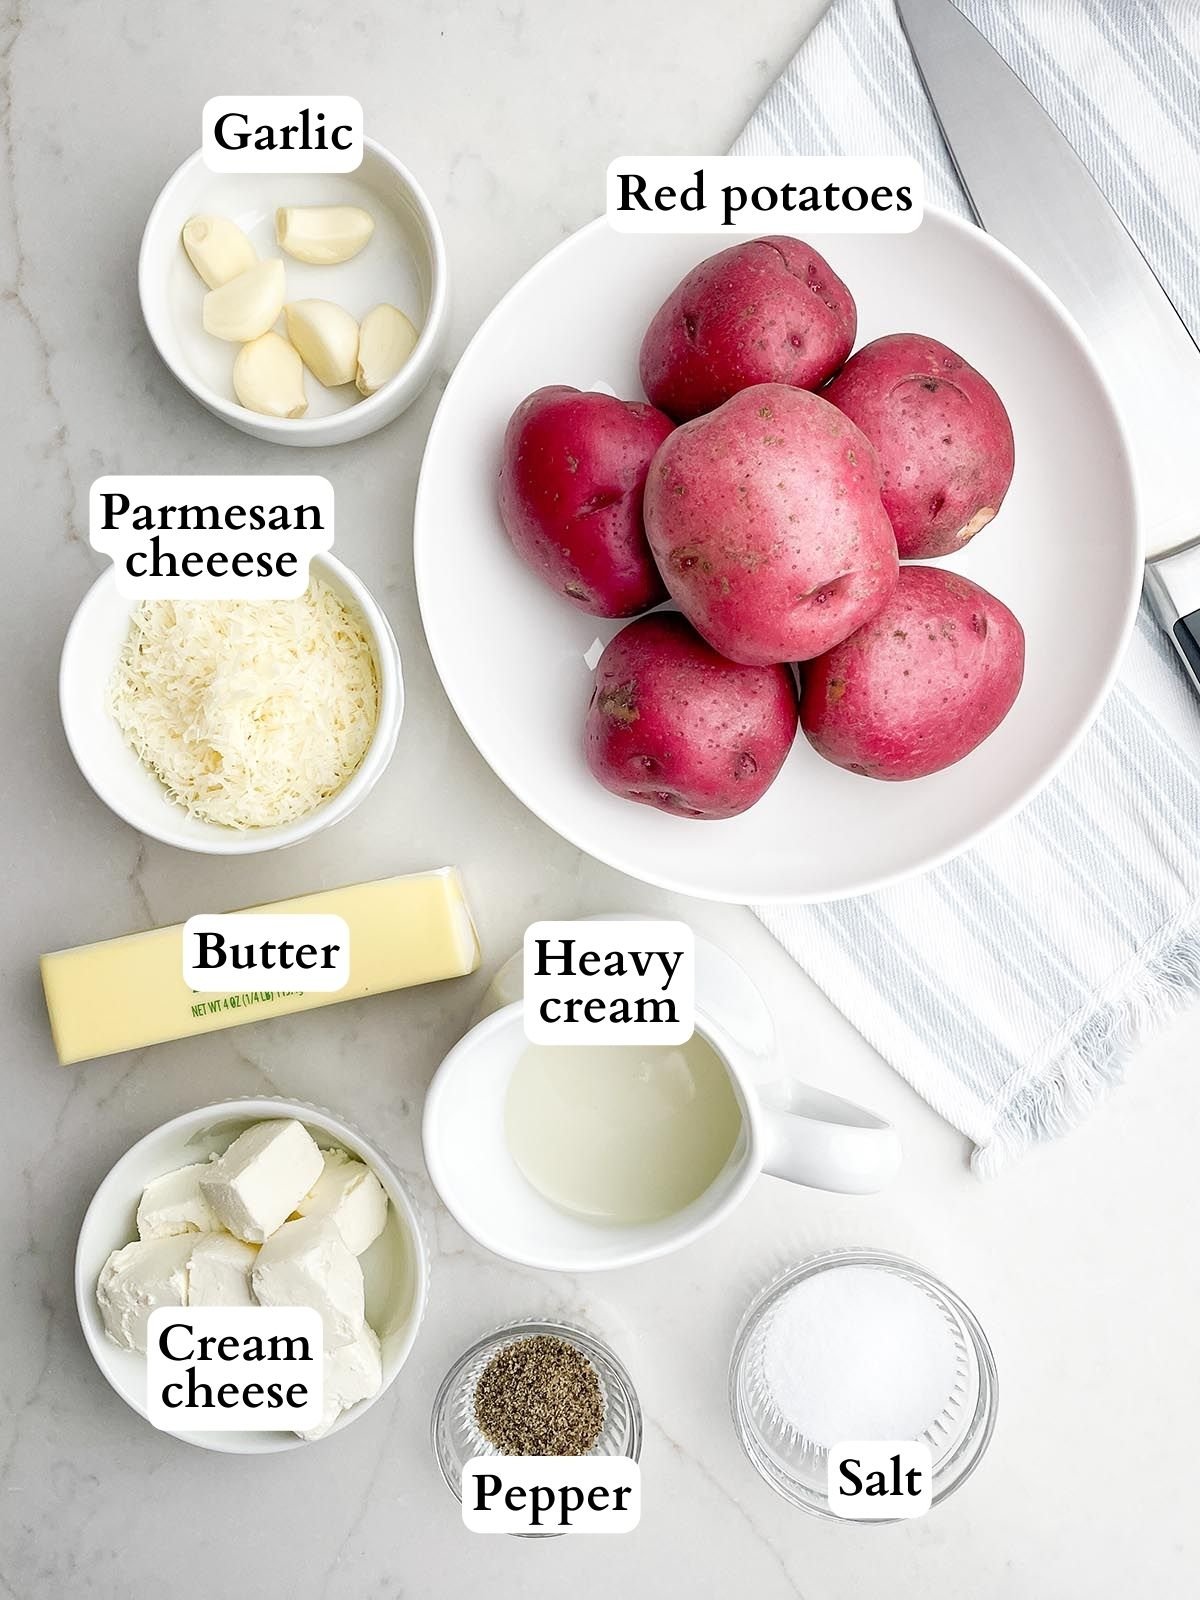 garlic redskin mashed potatoes ingredients